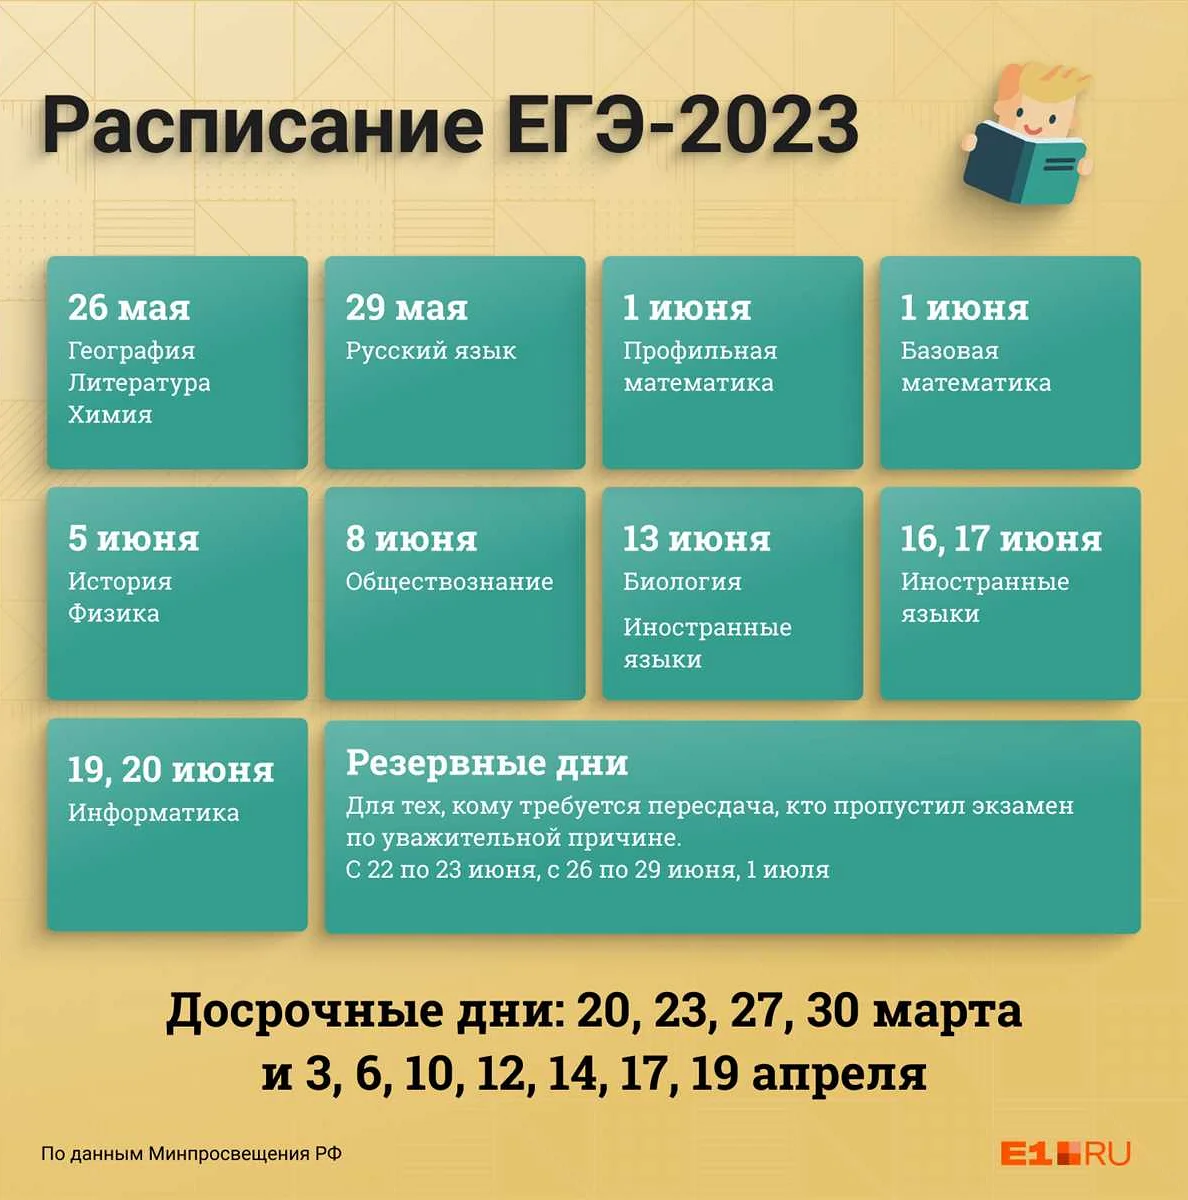 Как подать заявление на пересдачу профильной математики ЕГЭ 2021?